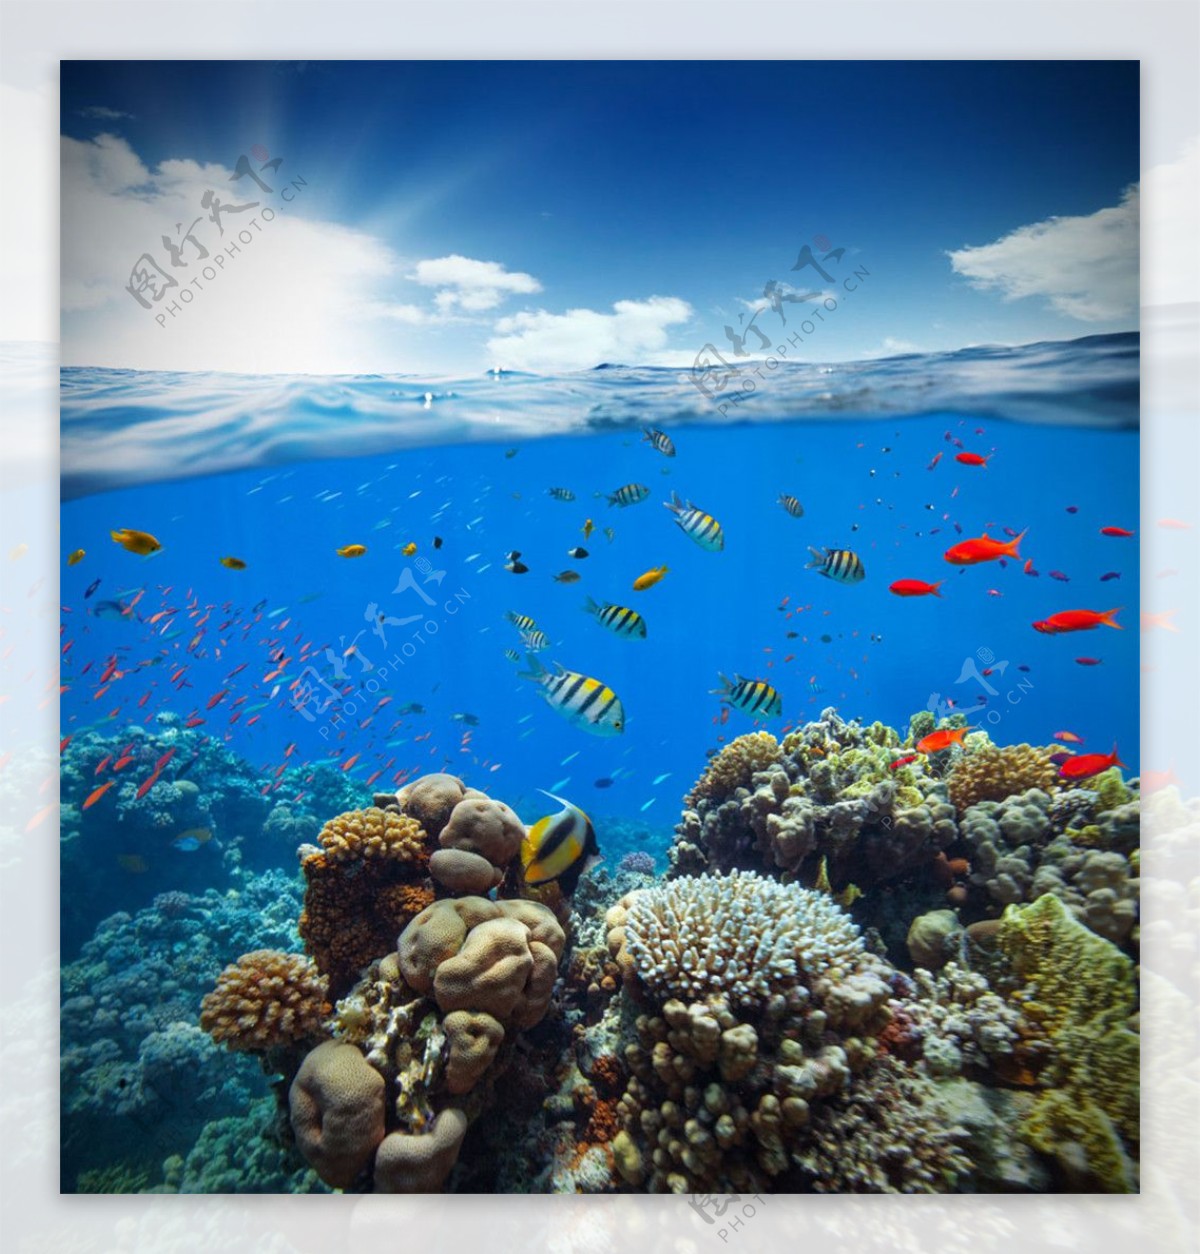 彩色鱼群珊瑚海底风光图片